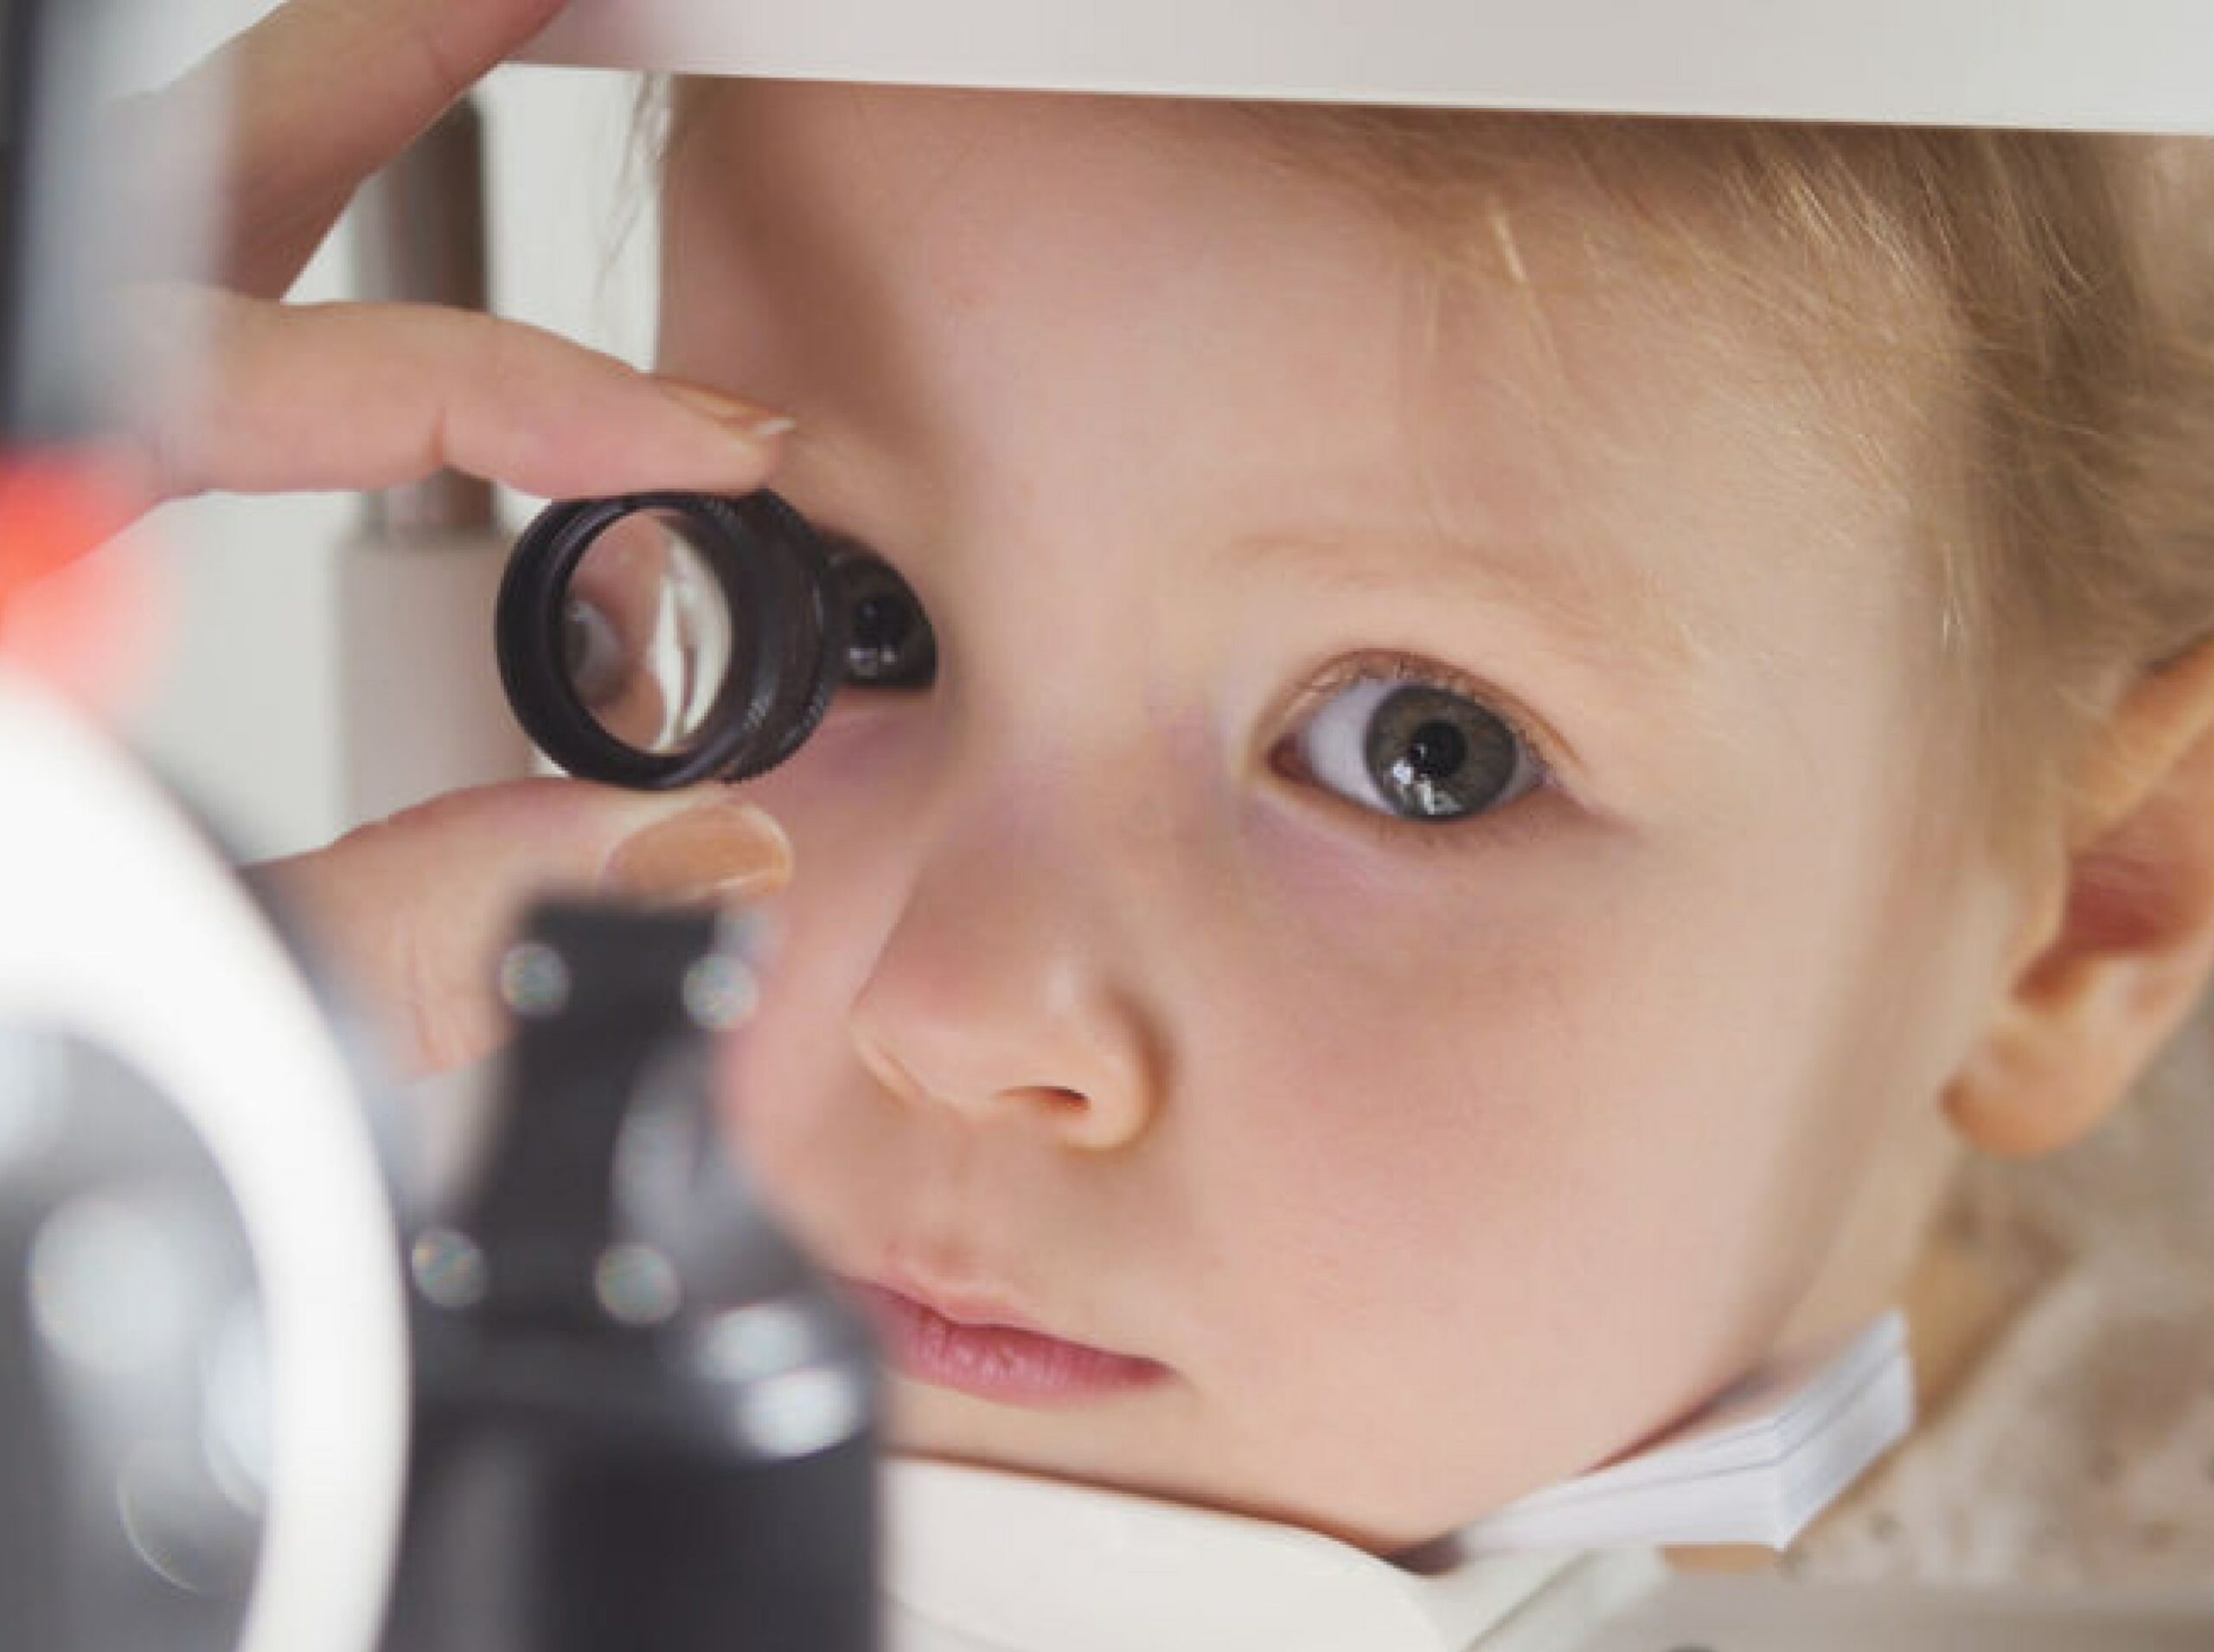 Ophtalmologie pédiatrique | Visiopôle du Beaujolais | rdv ophtalmo bébé | Villefranche-sur-Saône